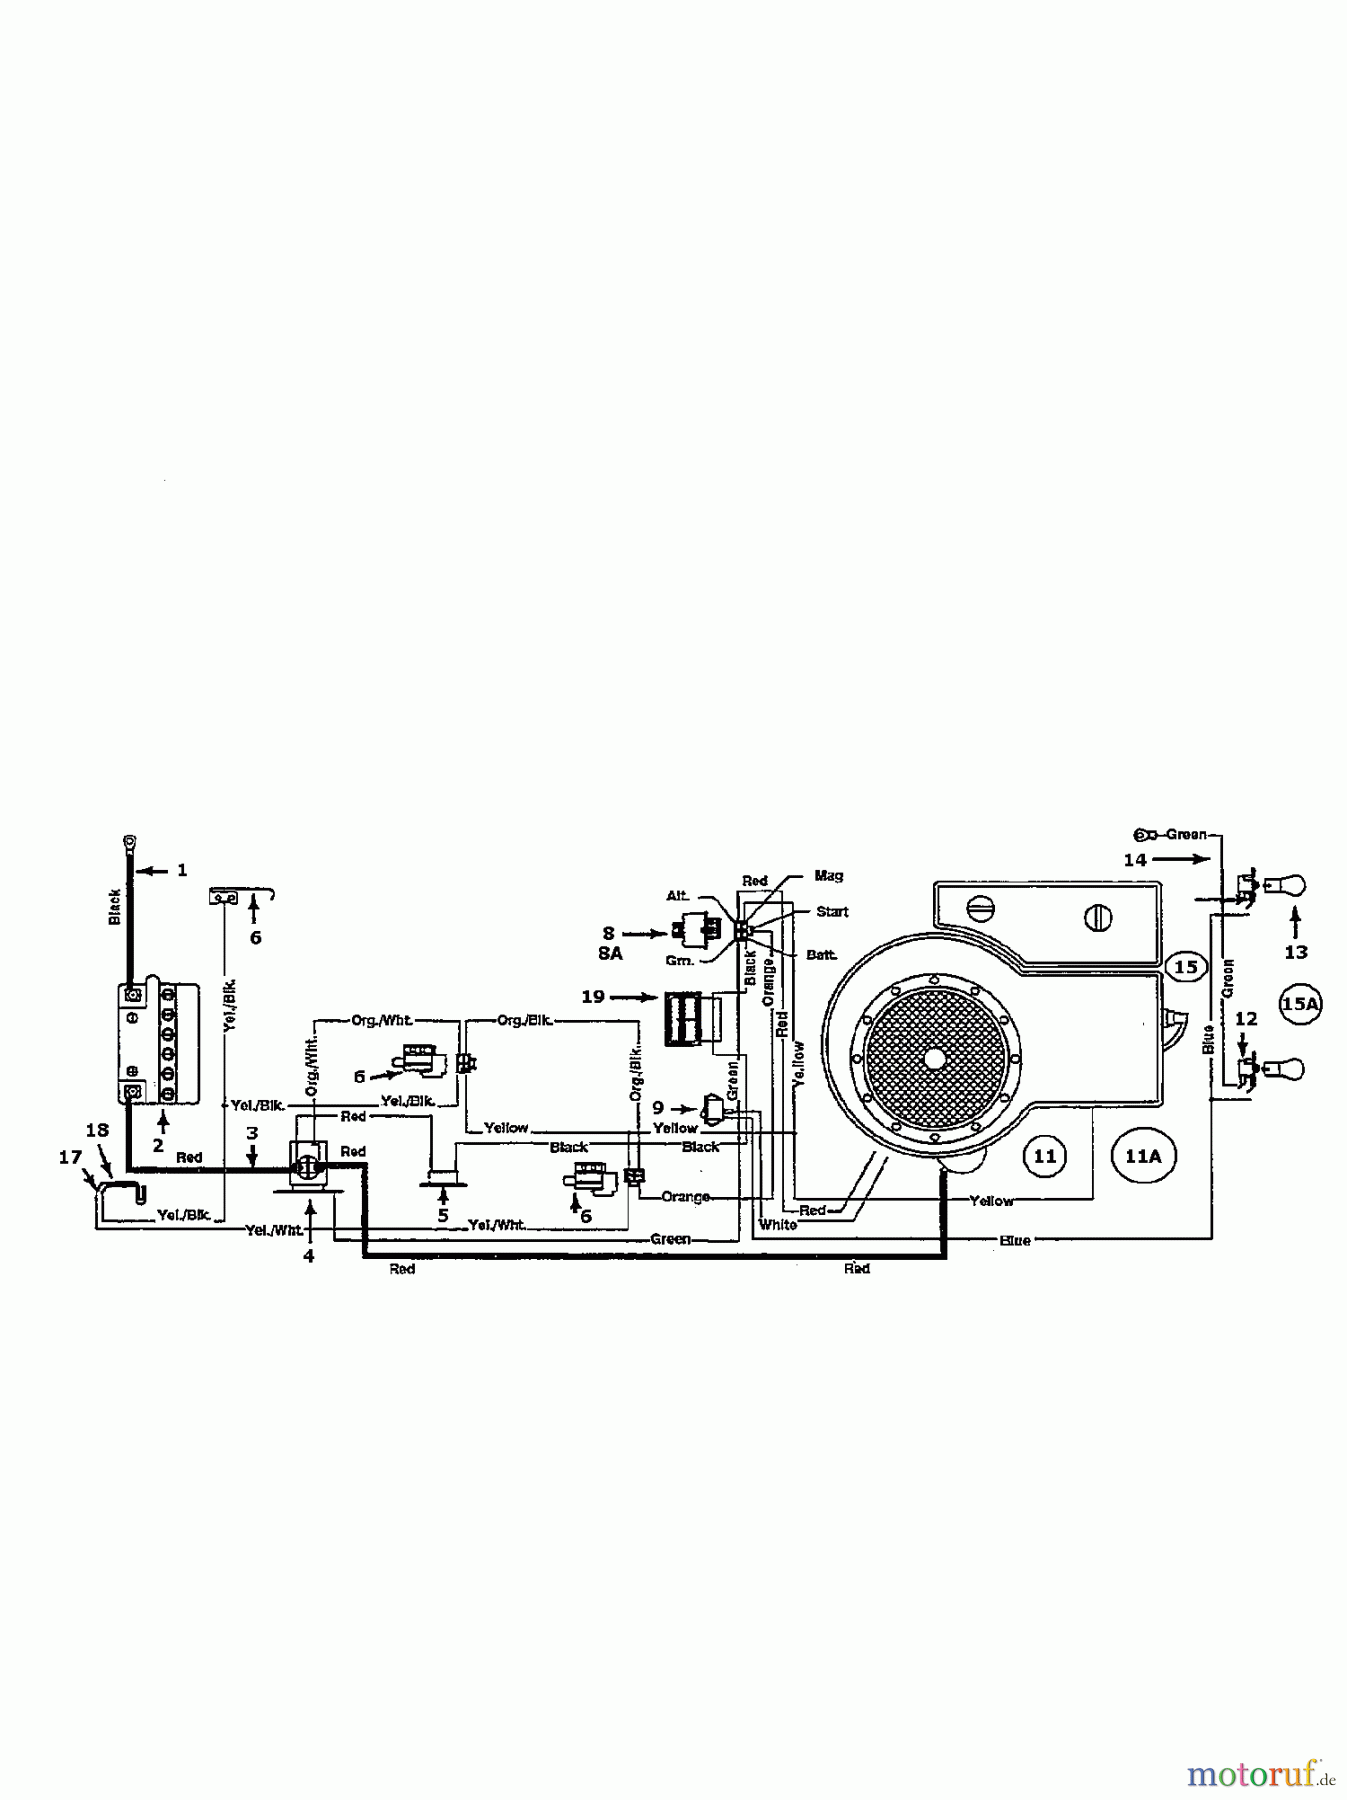  White Tracteurs de pelouse I 451 E 134I451E679  (1994) Plan électrique cylindre simple